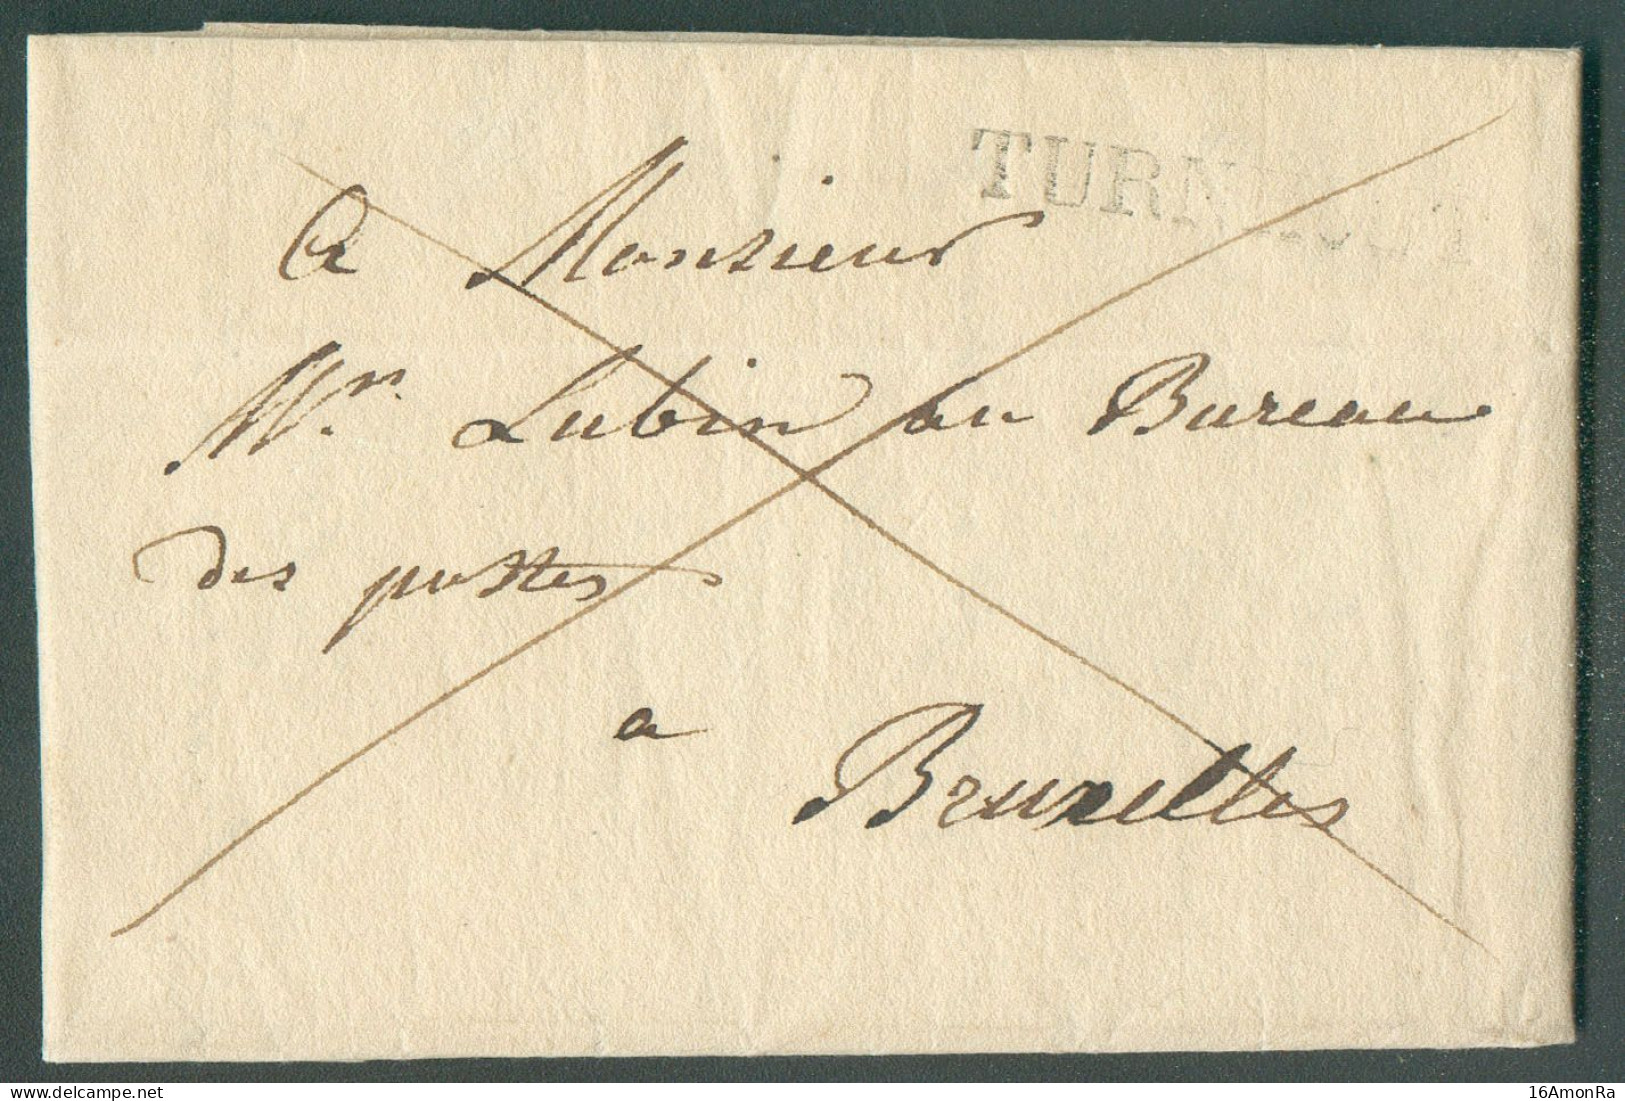 LAC De TURNHOUT le 4 Septembre 1828 Adressée En Franchise De Port à Mr. Lubin, Au Bureau De Postes à Bruxelles.  Belle F - 1815-1830 (Periodo Holandes)